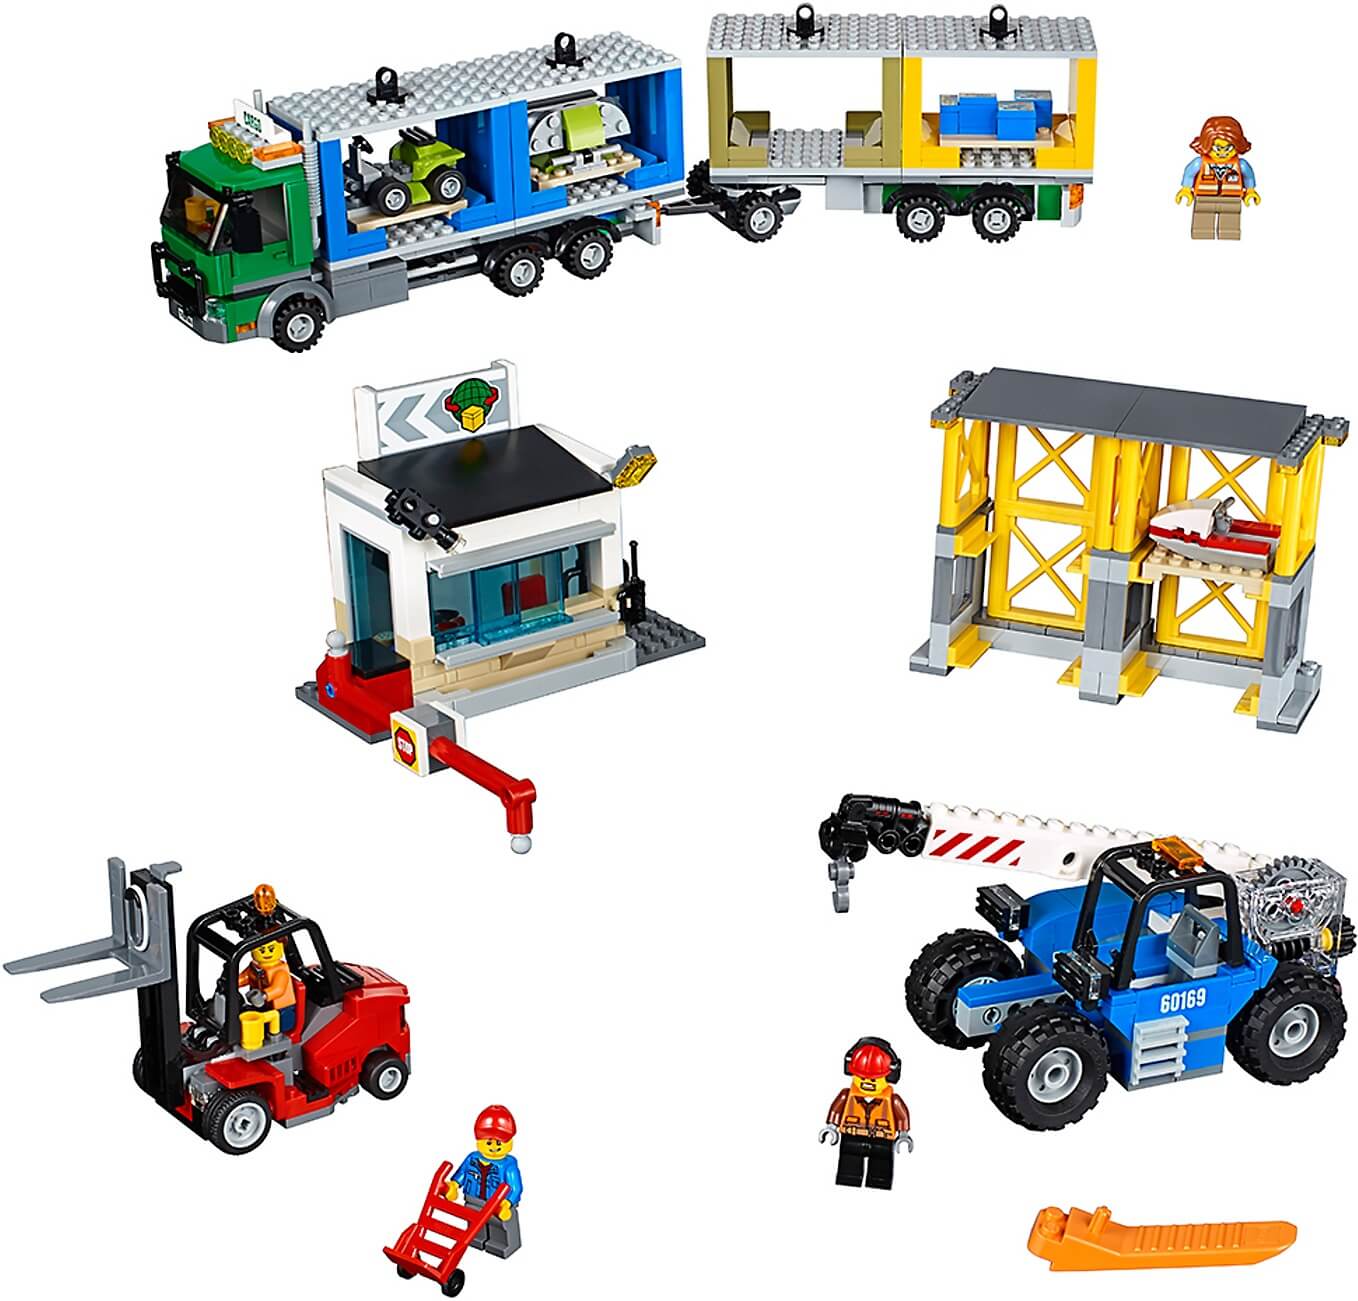 Terminal de mercancías ( Lego 60169 ) imagen a